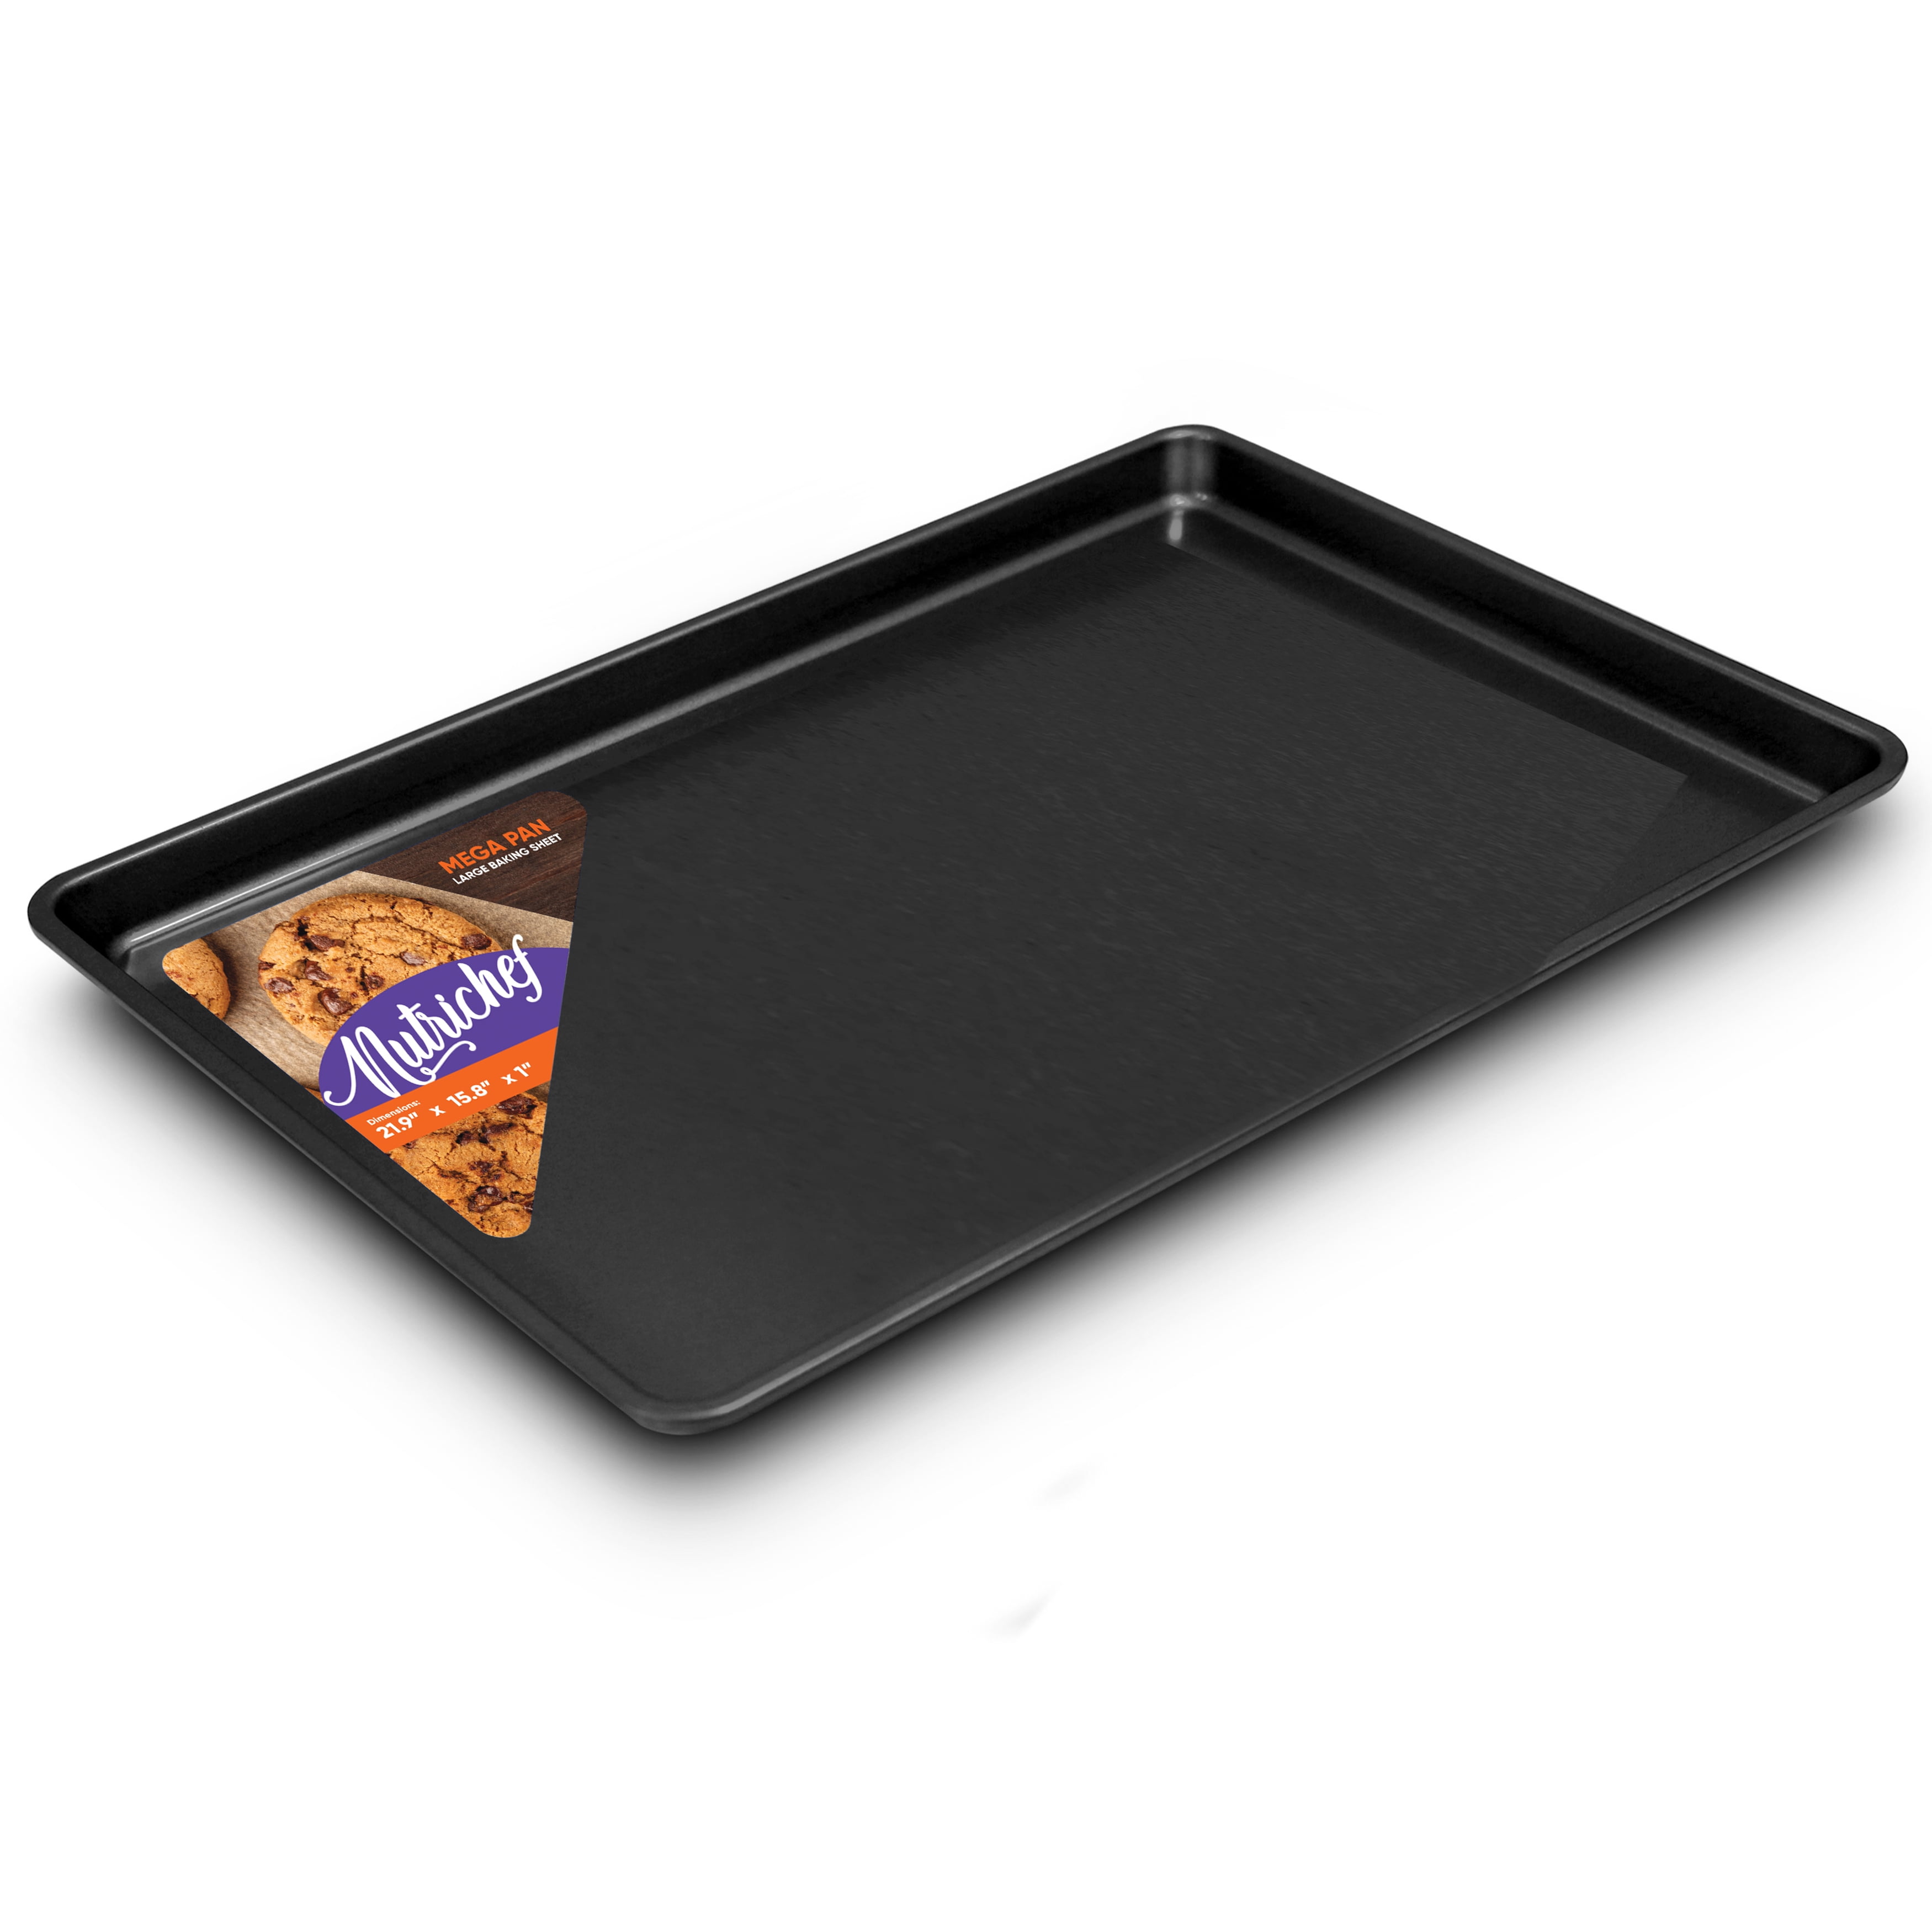 NutriChef Non-Stick Black Baking Pans - 6 Piece Steel Bakeware Set